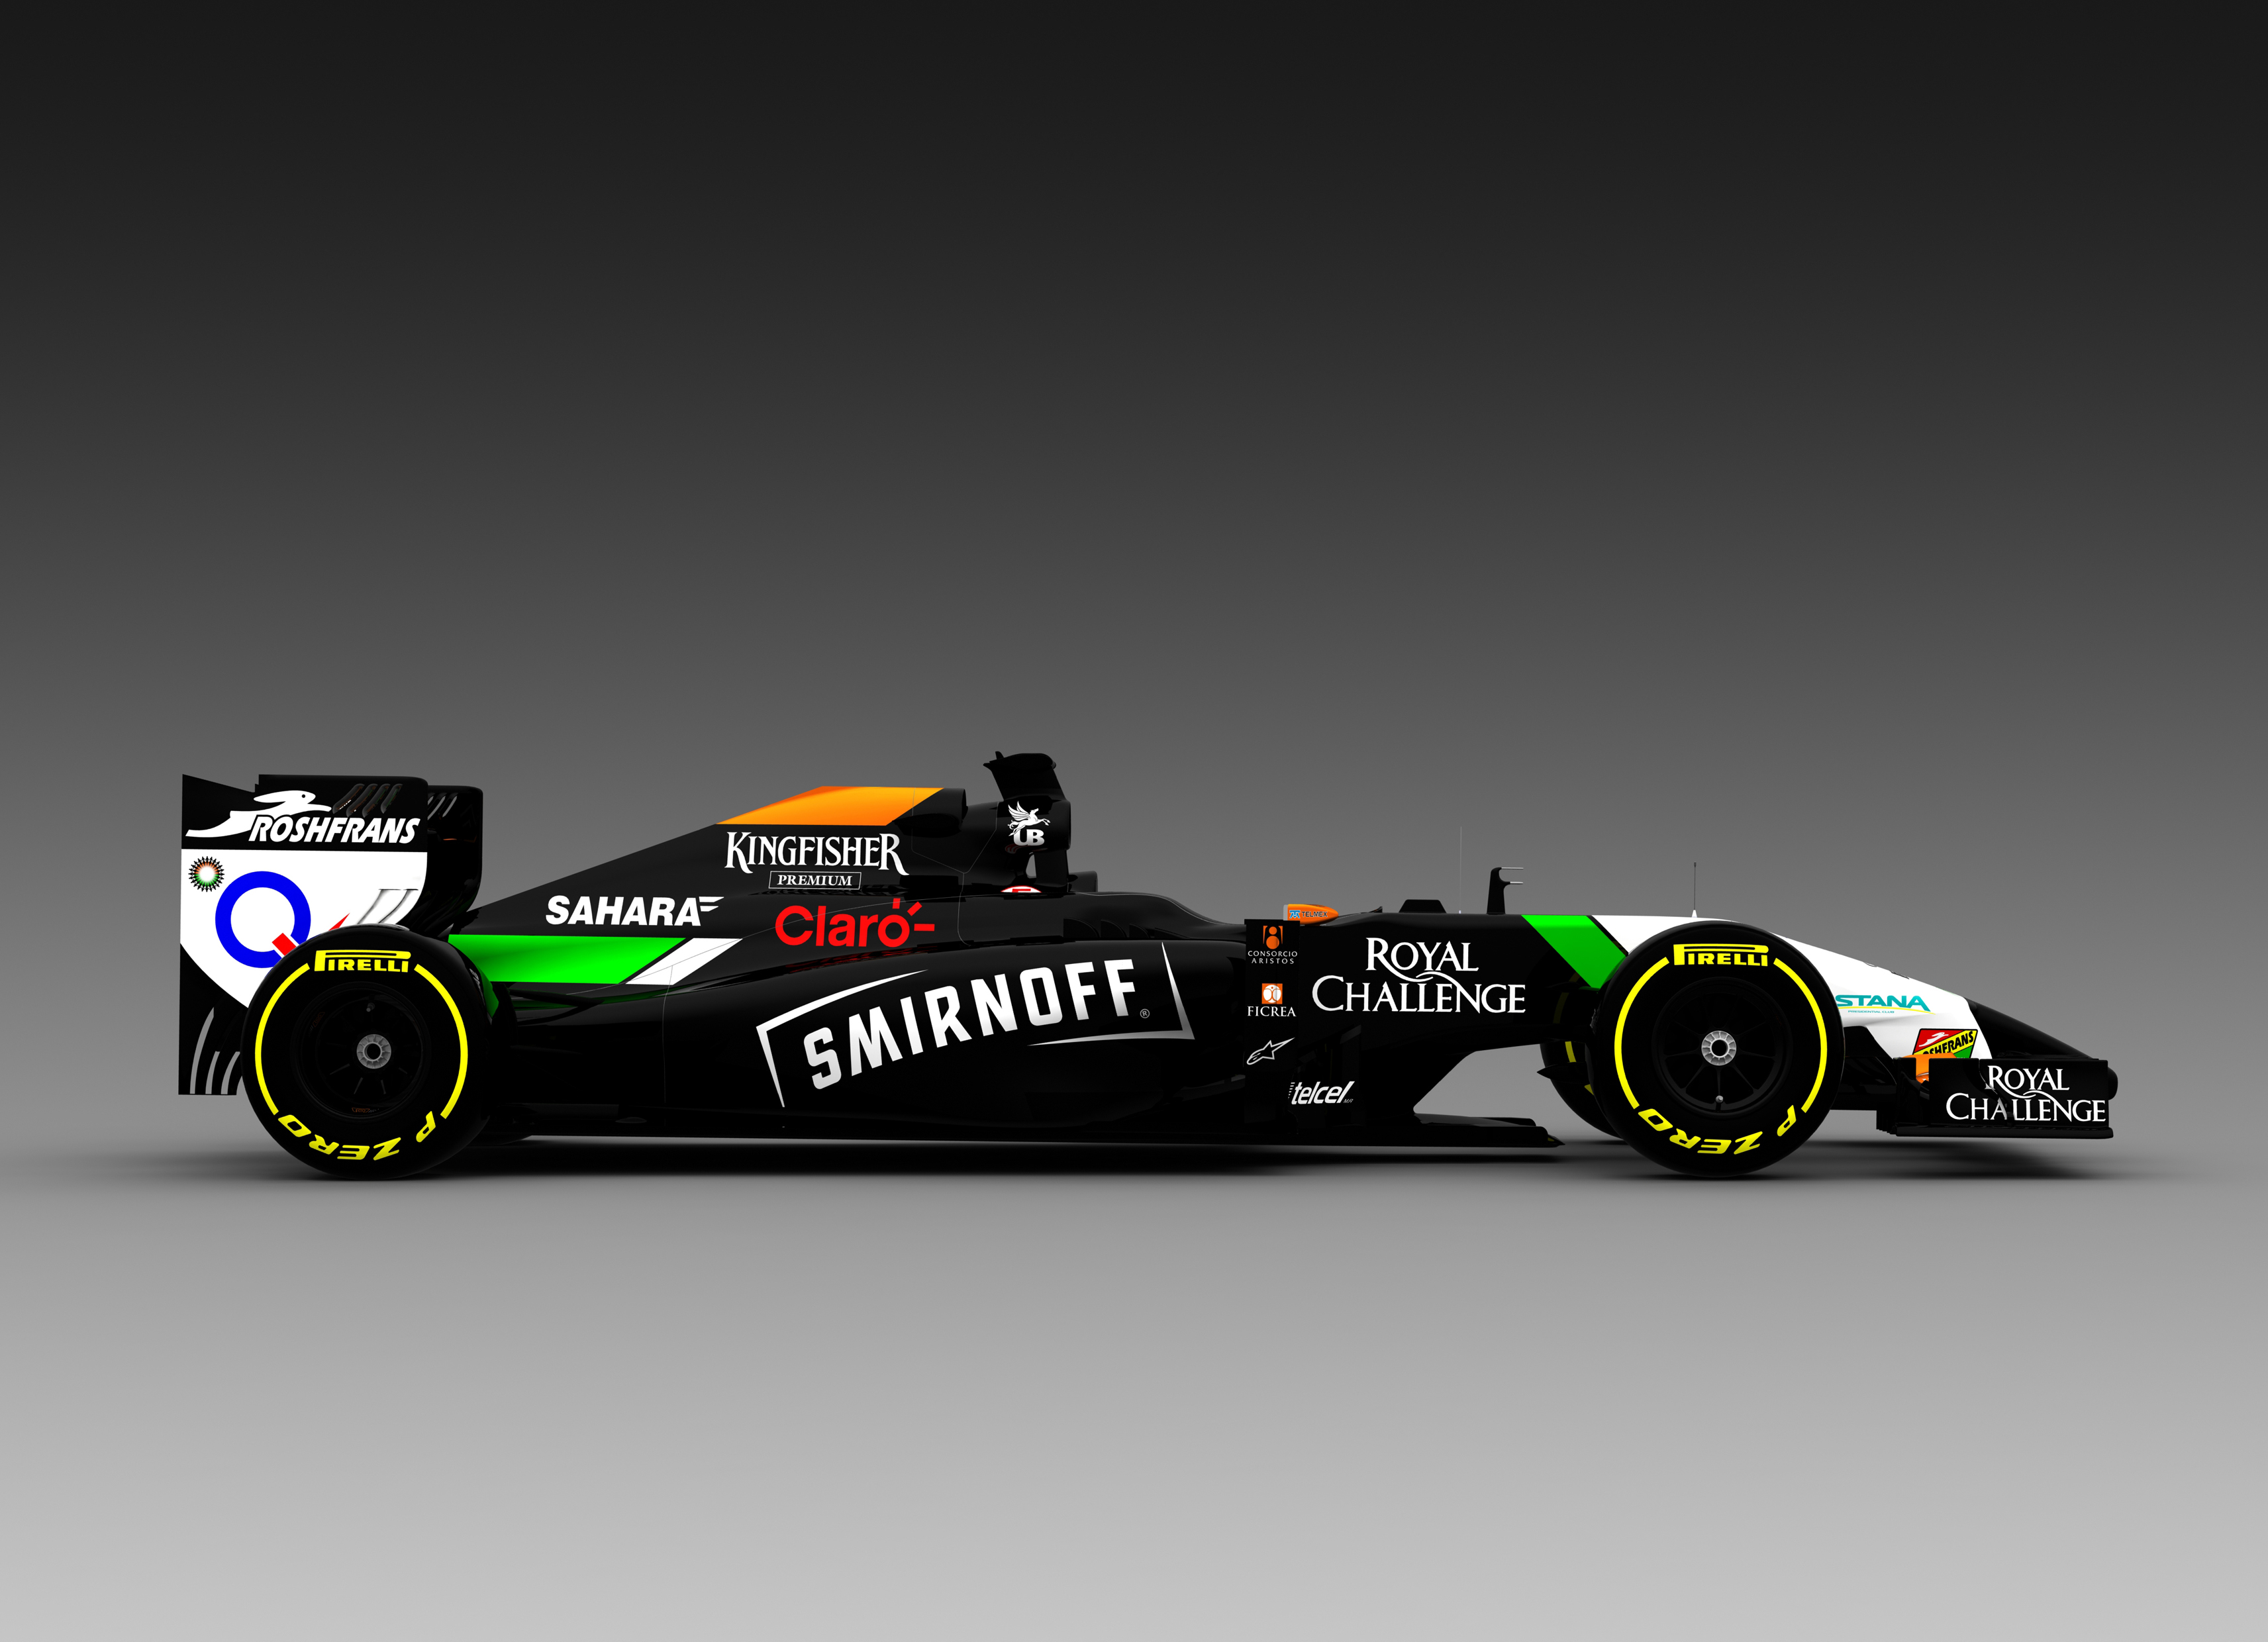 Smirnoff nieuwe sponsor van Force India